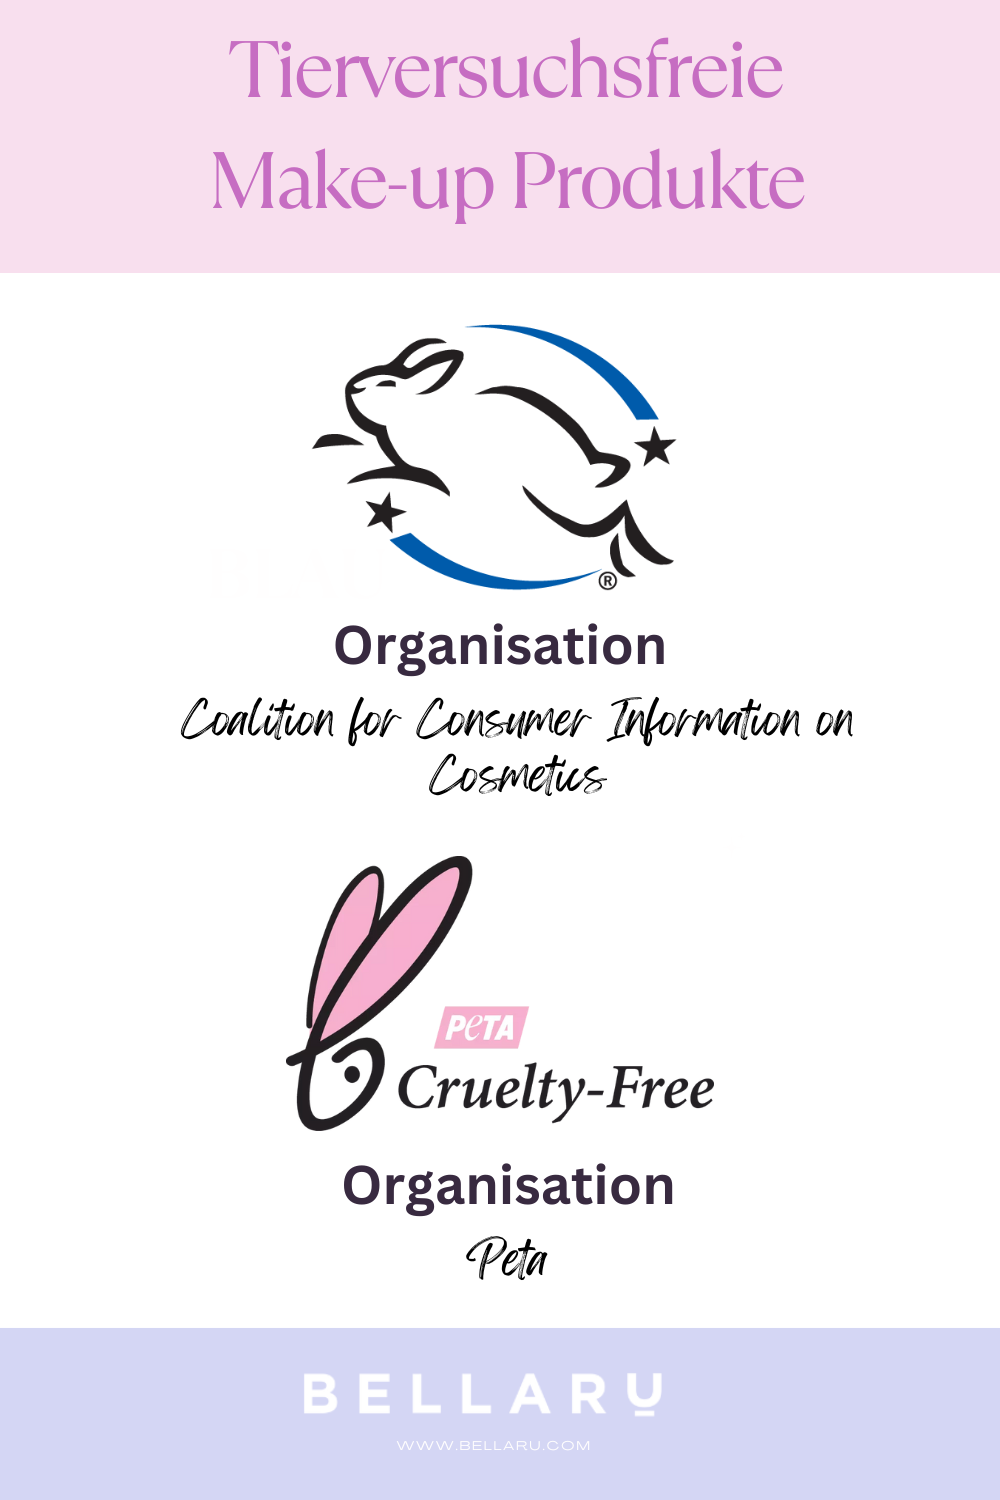 Zertifikate für Tierversuchsfreie Make-up Produkte, Leaping Bunny und Caring consumer